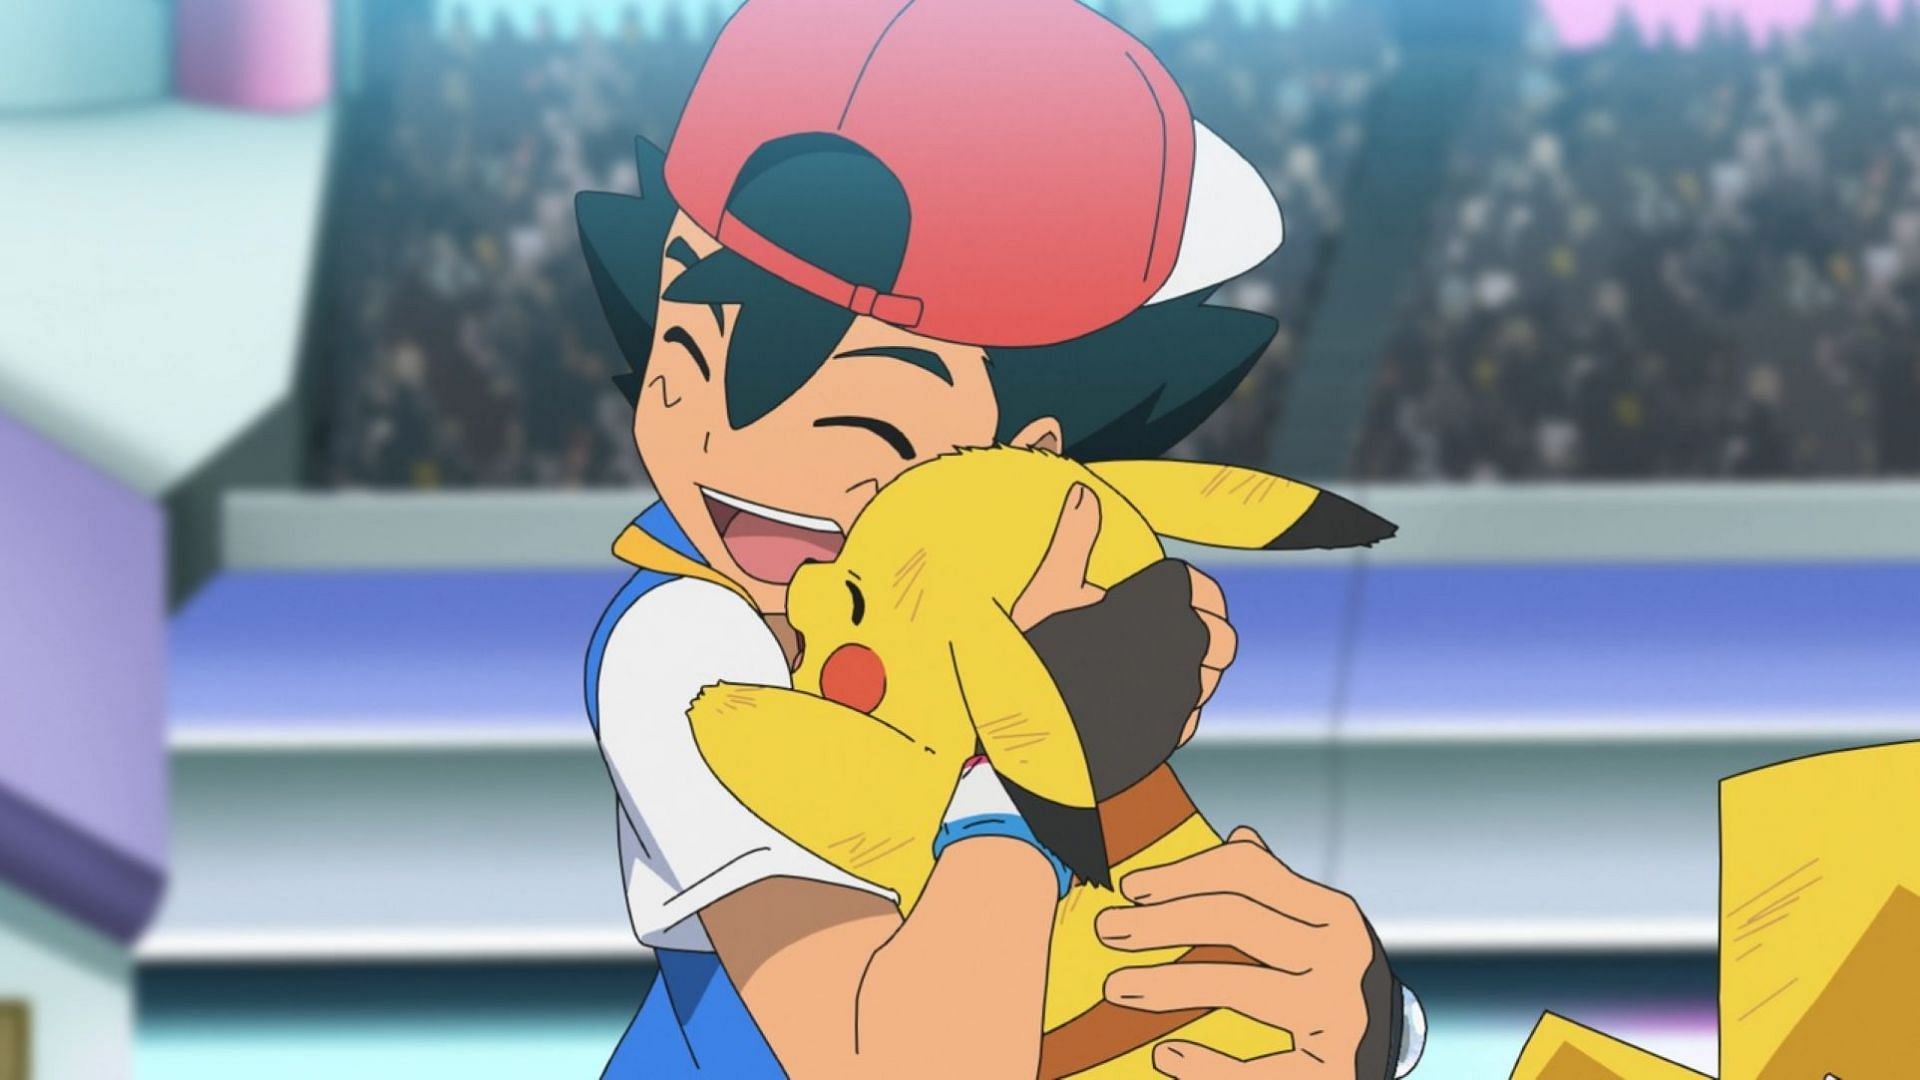 Ash and Pikachu (Image via OLM Inc/Team Kato)